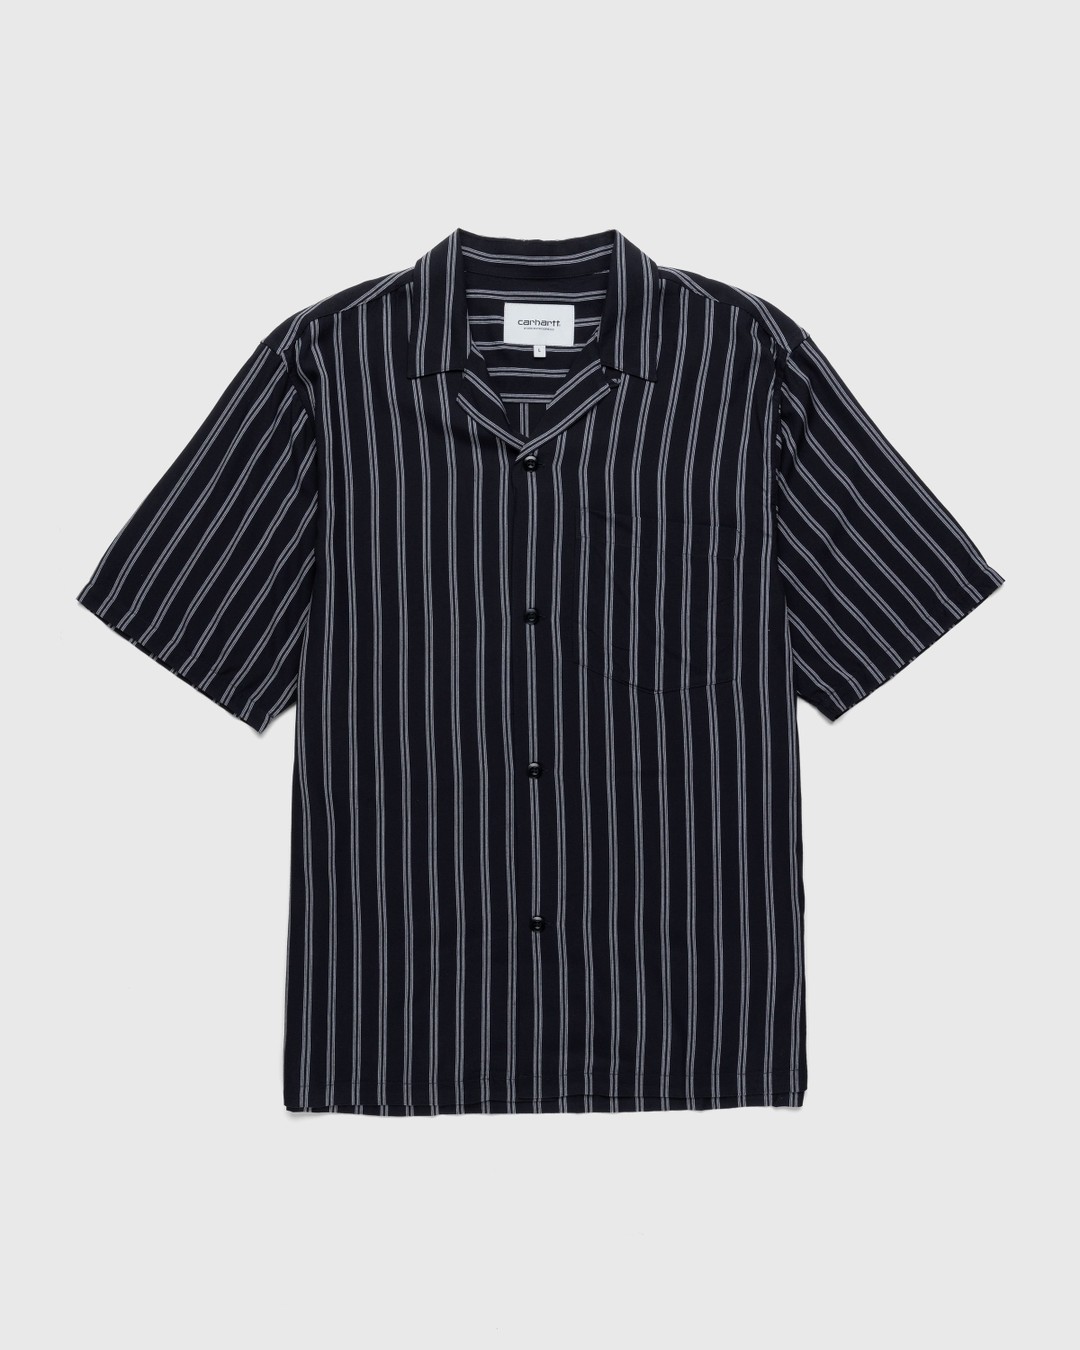 Carhartt WIP – Reyes Stripe Shirt Black - Shirts - Black - Image 1